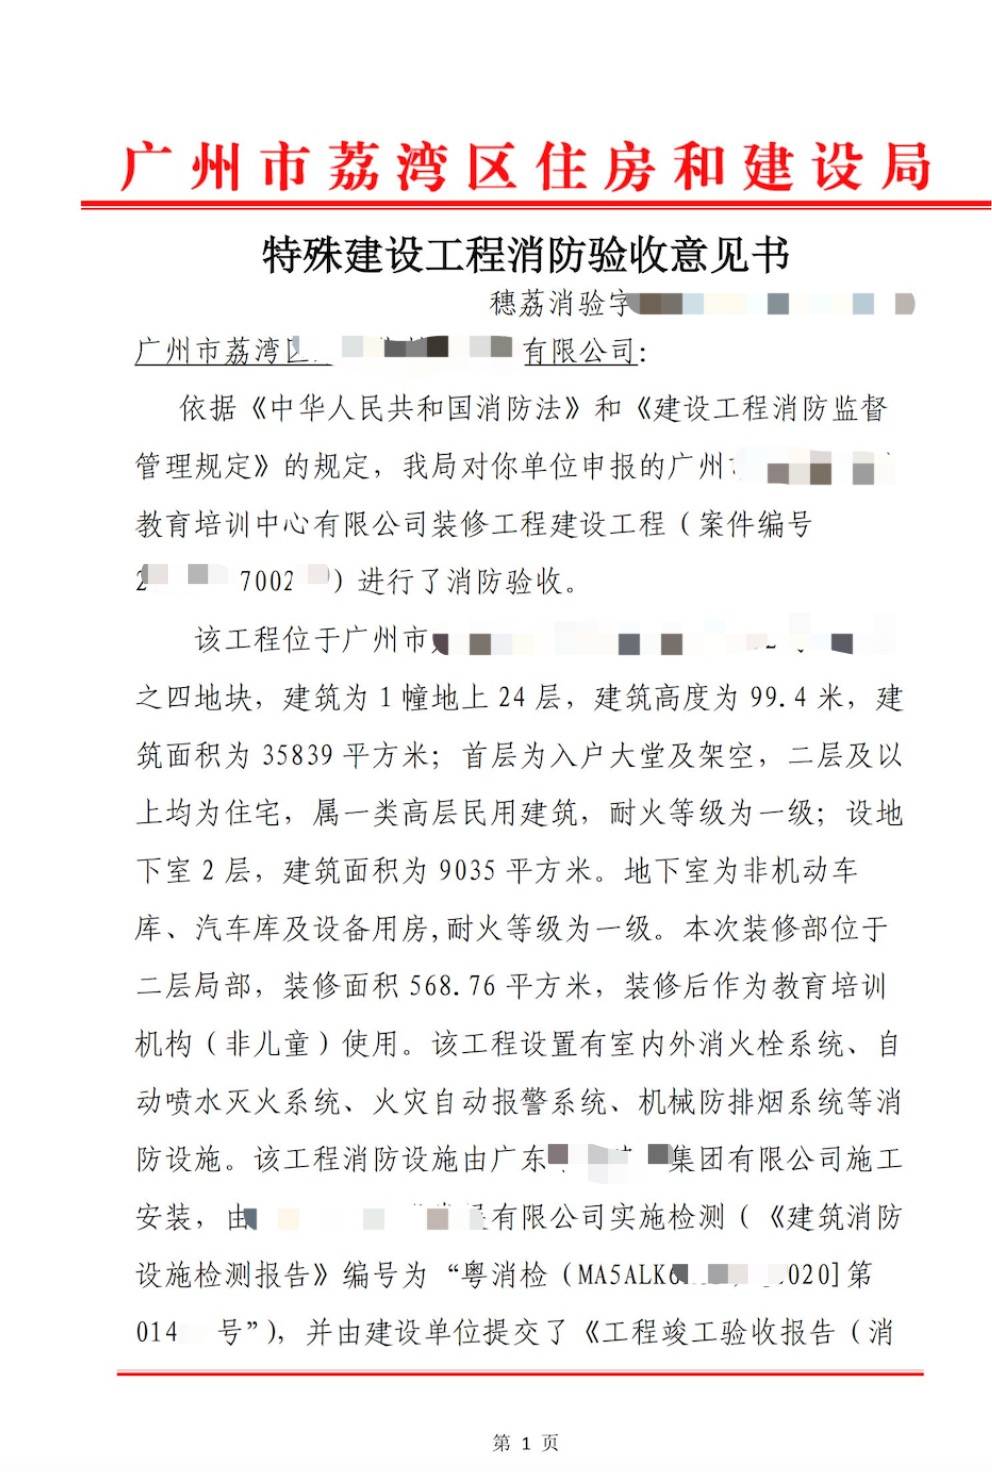 苹果版cad安装流程:广东省校外培训机构，要不要办理二次消防报建呢？